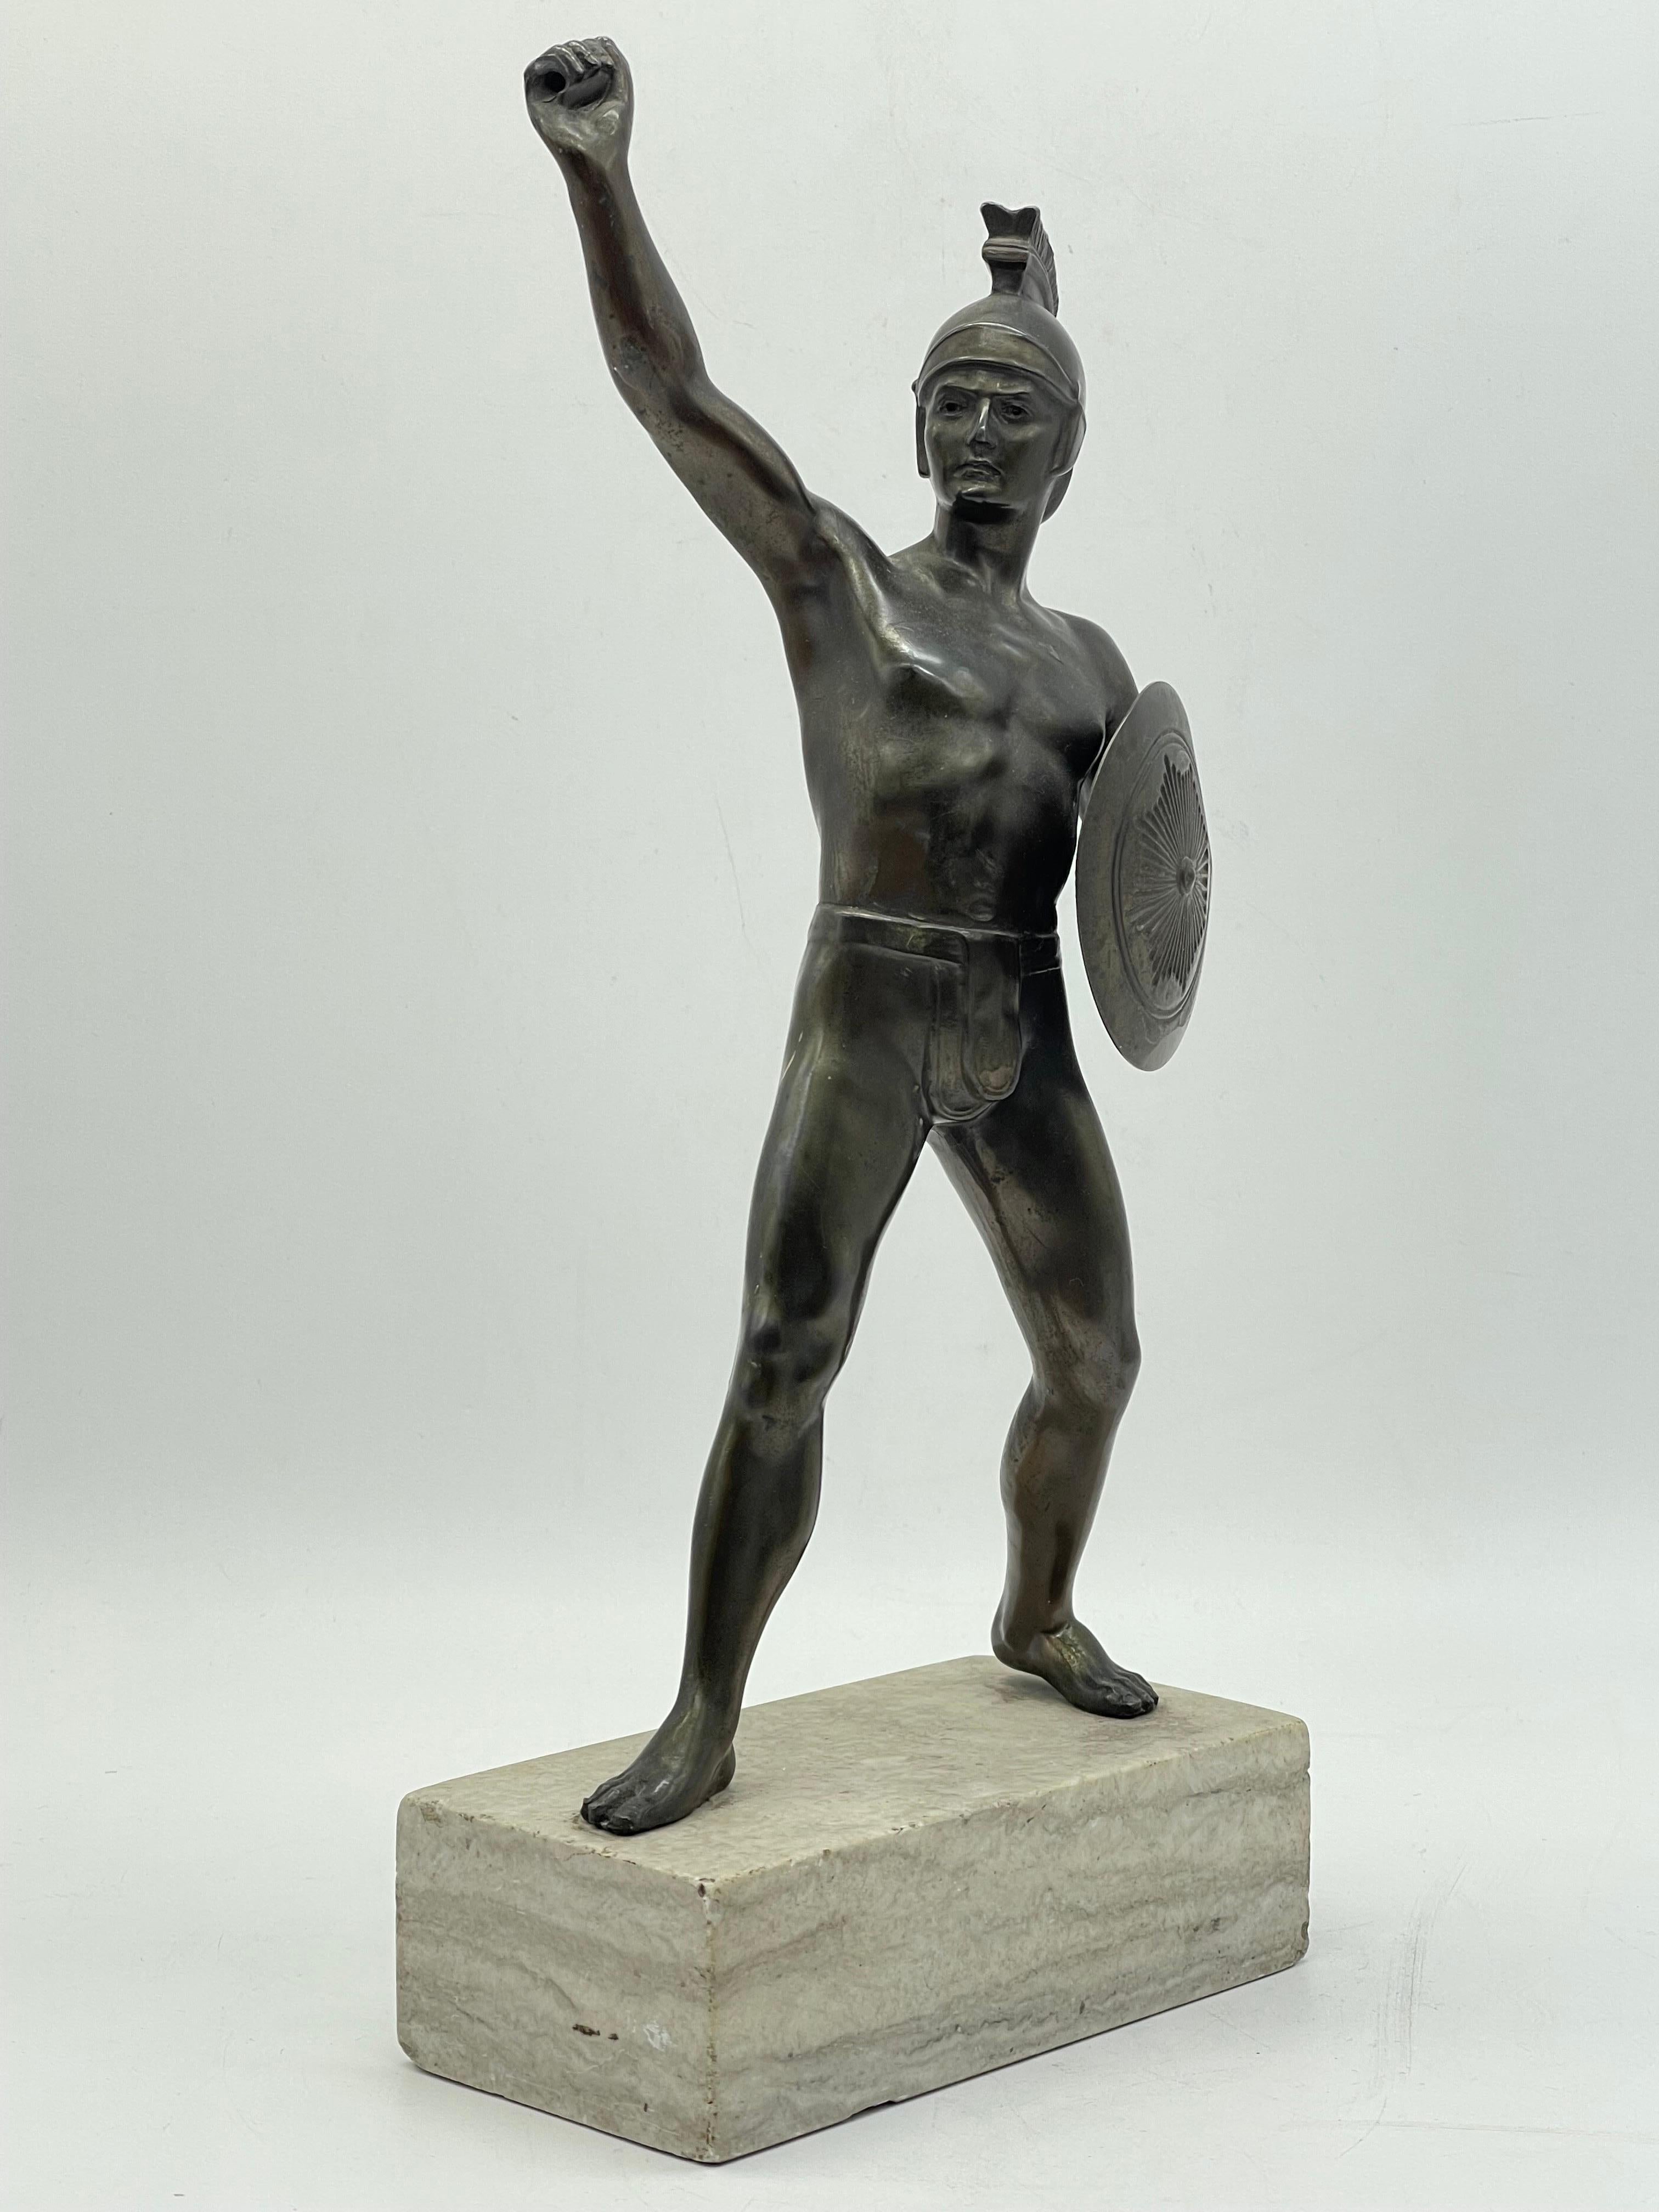 Athletic Bronze-Krieger-Skulptur eines Kriegers auf Marmorsockels, griechische Figur mit Schild

Athletische griechische Bronzeskulptur eines Kriegers / Figur mit Schild

Auf mit Marmorsockel 

Der Zustand ist auf den Bildern zu sehen.